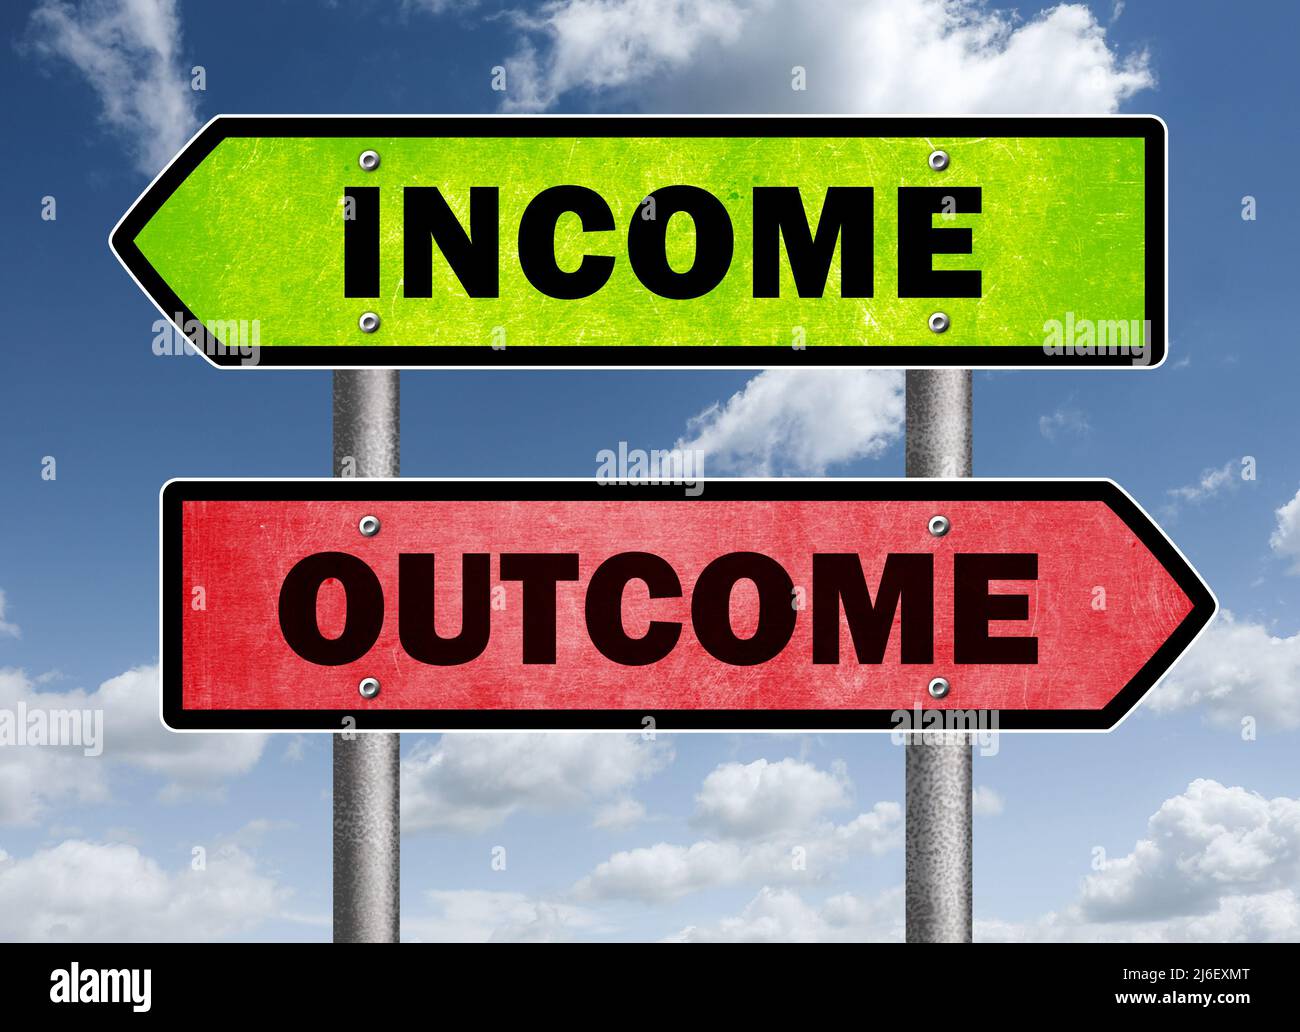 Income versus Outcome Stock Photo